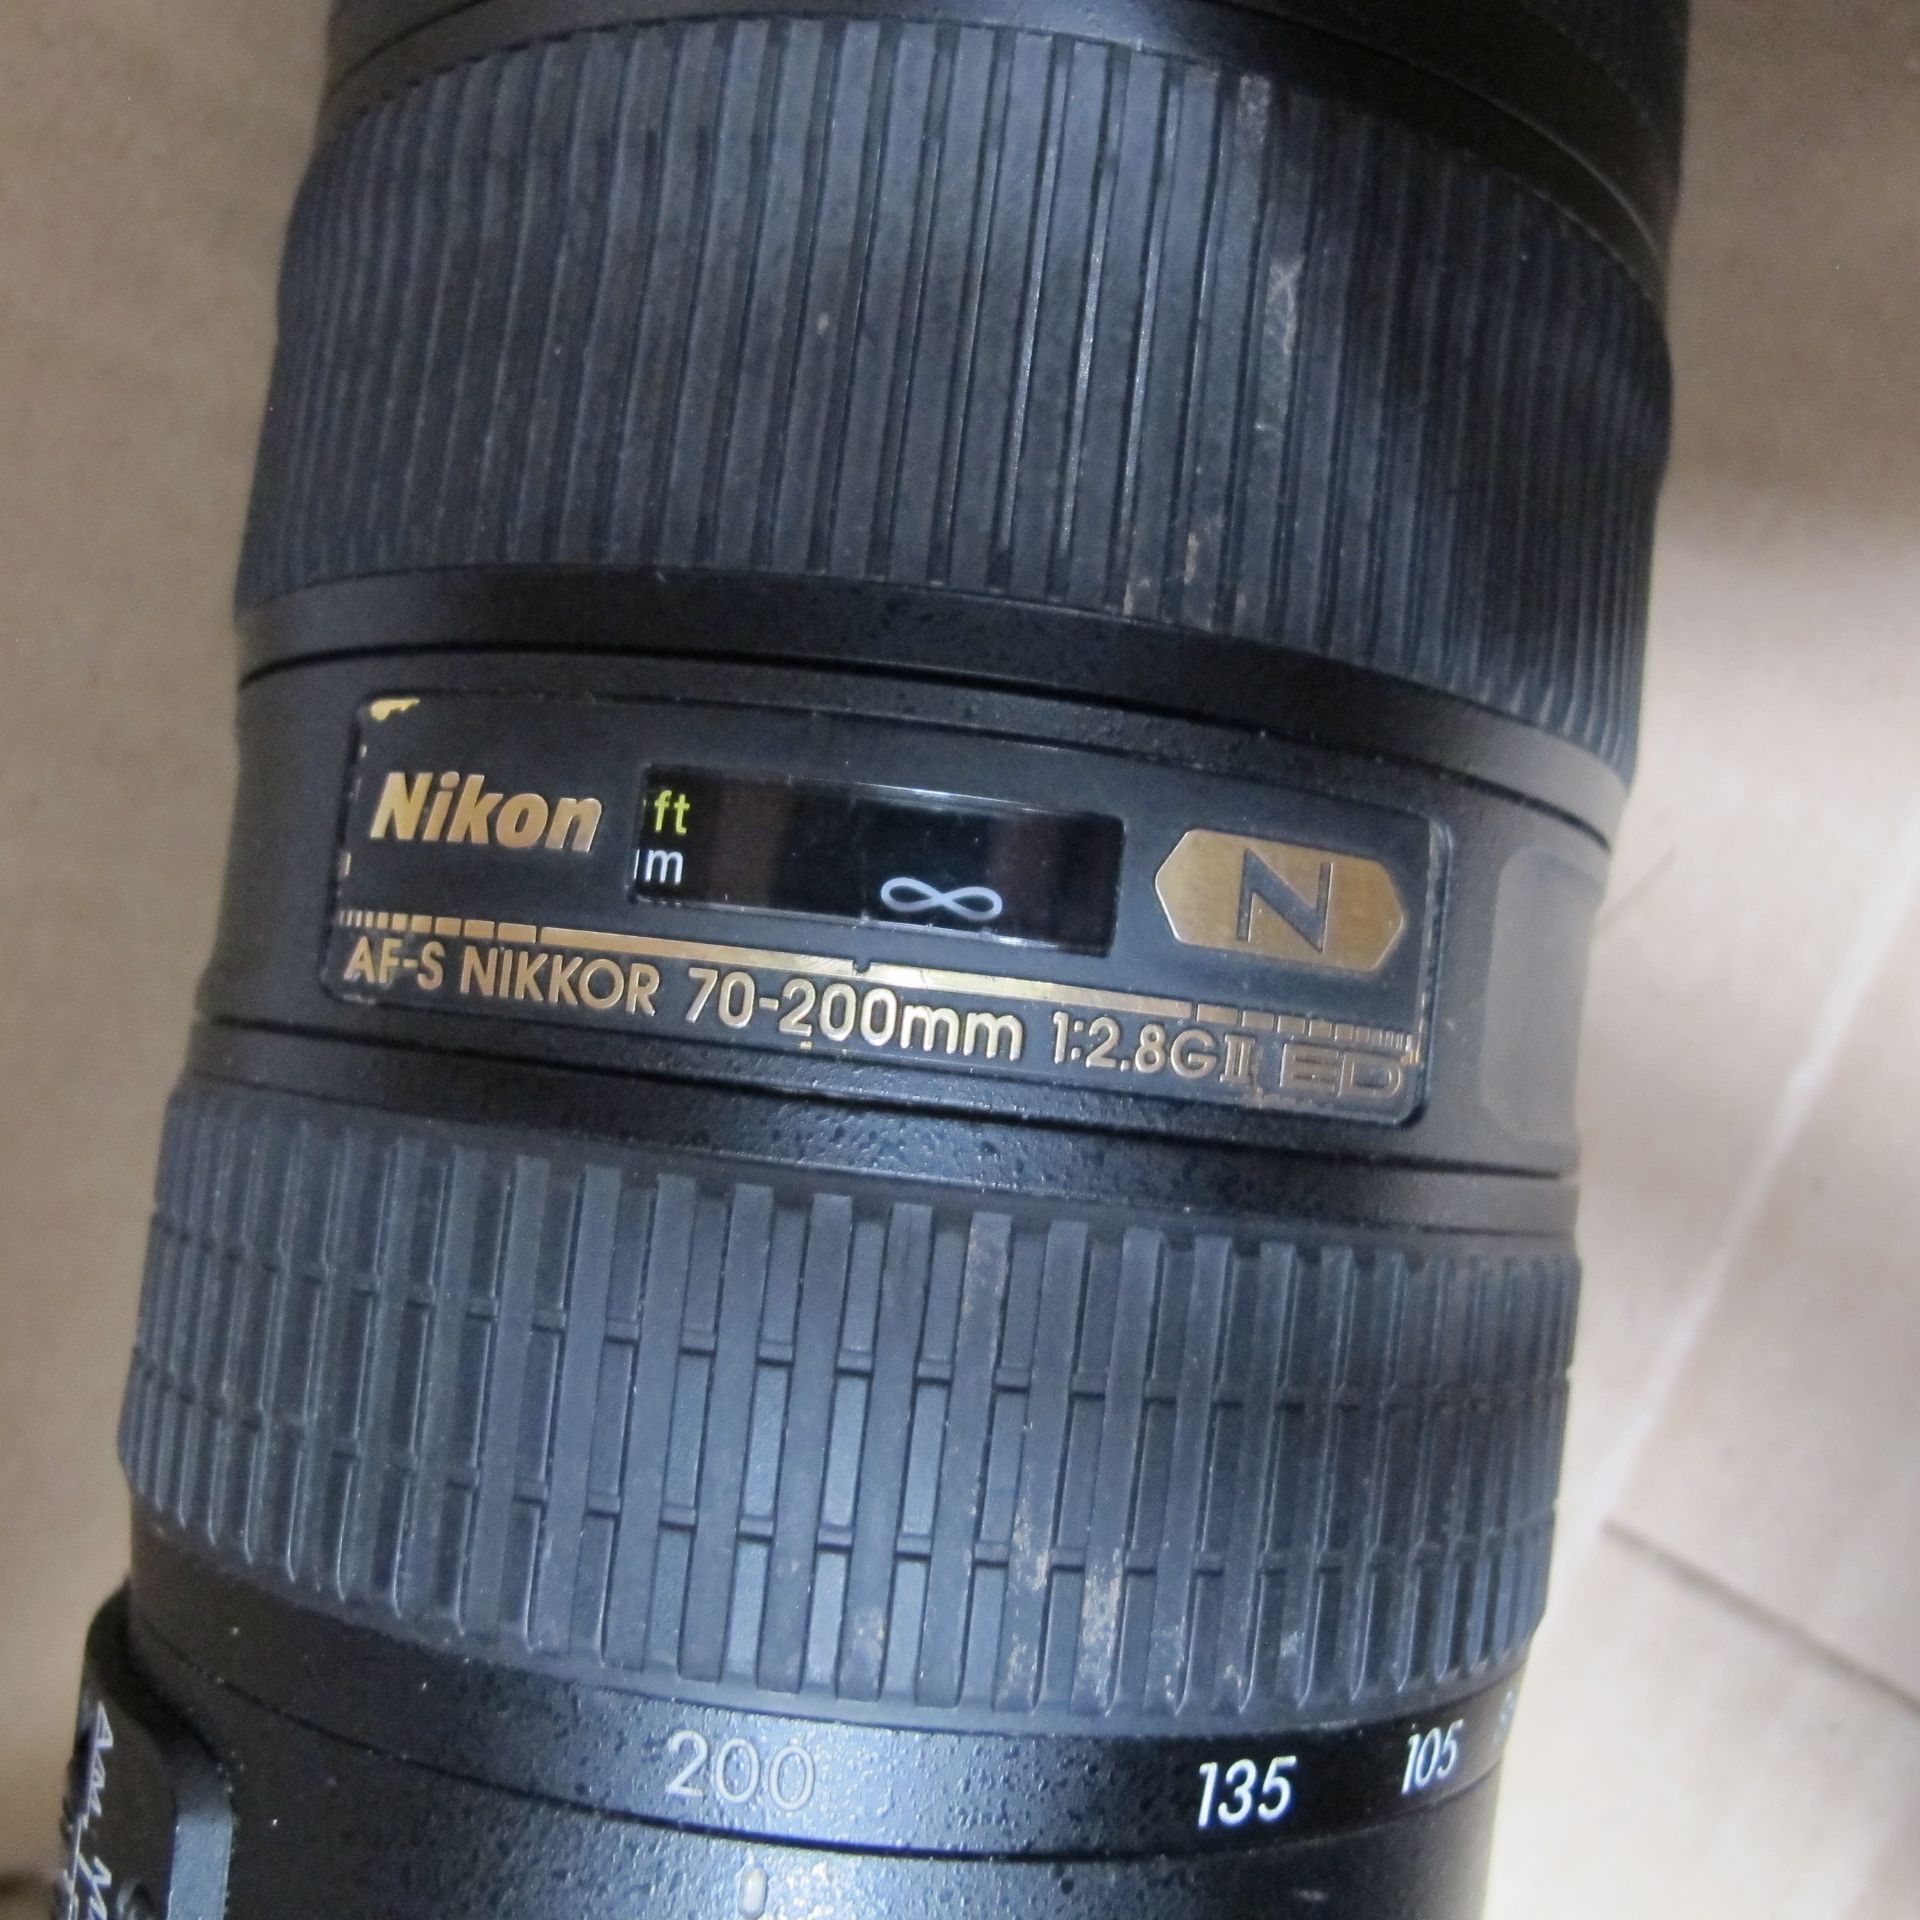 Nikon AFS NIKKOR 70-200mm 1:28 G2ED Lens and a Nikon ED AFS NIKKOR 28-70mm lens - Image 3 of 3